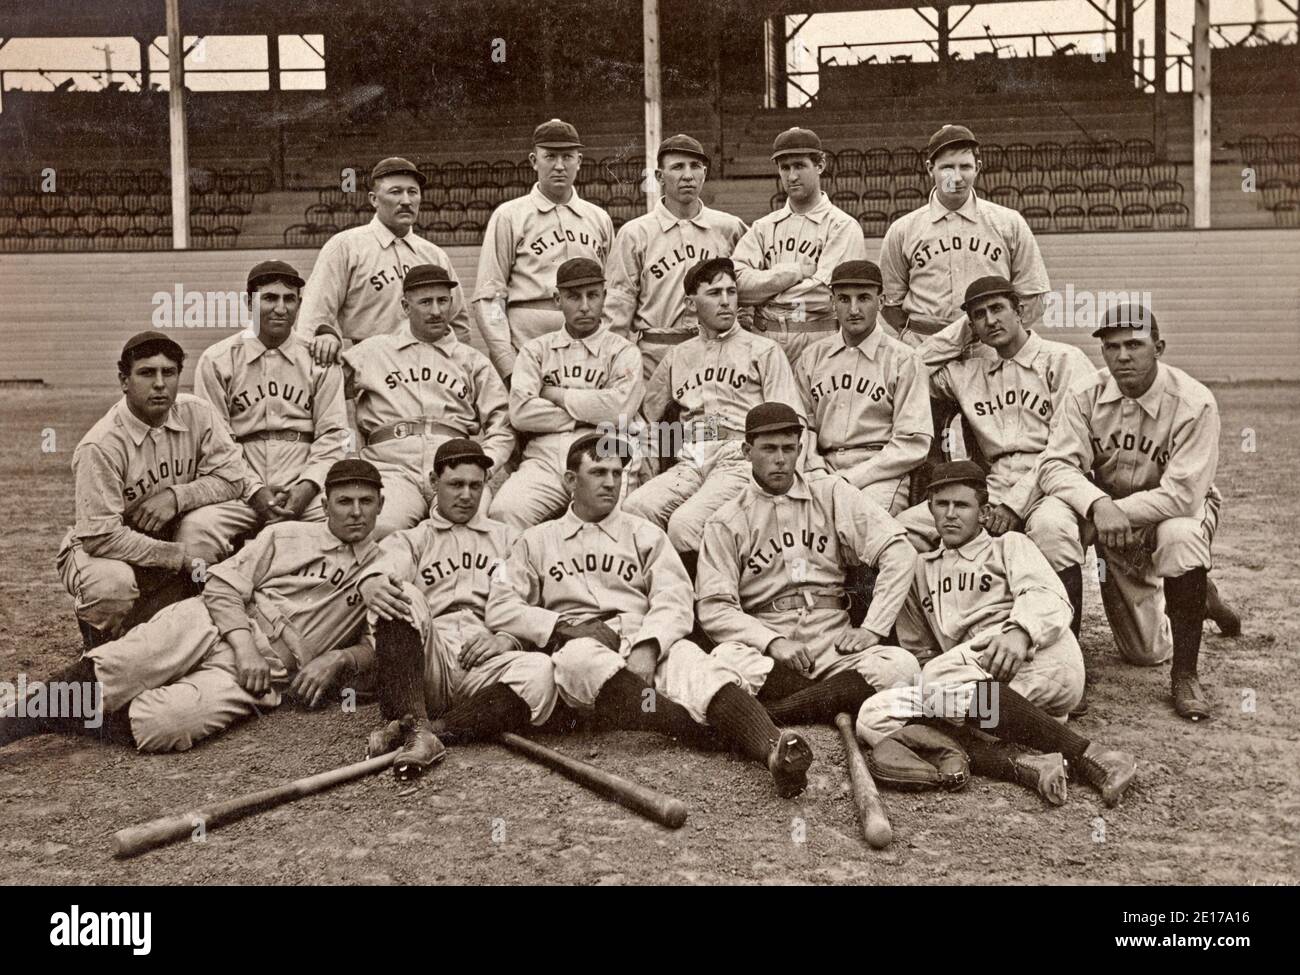 St. Louis Basisballverein, Gruppe A - Foto zeigt ein Mannschaftsporträt der St. Louis Perfectos Baseballmannschaft im Jahr 1899; Spieler, die Baseball-Uniformen tragen, stehen und sitzen auf dem Feld, mit Blick nach vorne, mit drei Fledermäusen auf dem Boden zu ihren Füßen, im Stadion, mit den Tribünen im Hintergrund, 1899 Stockfoto